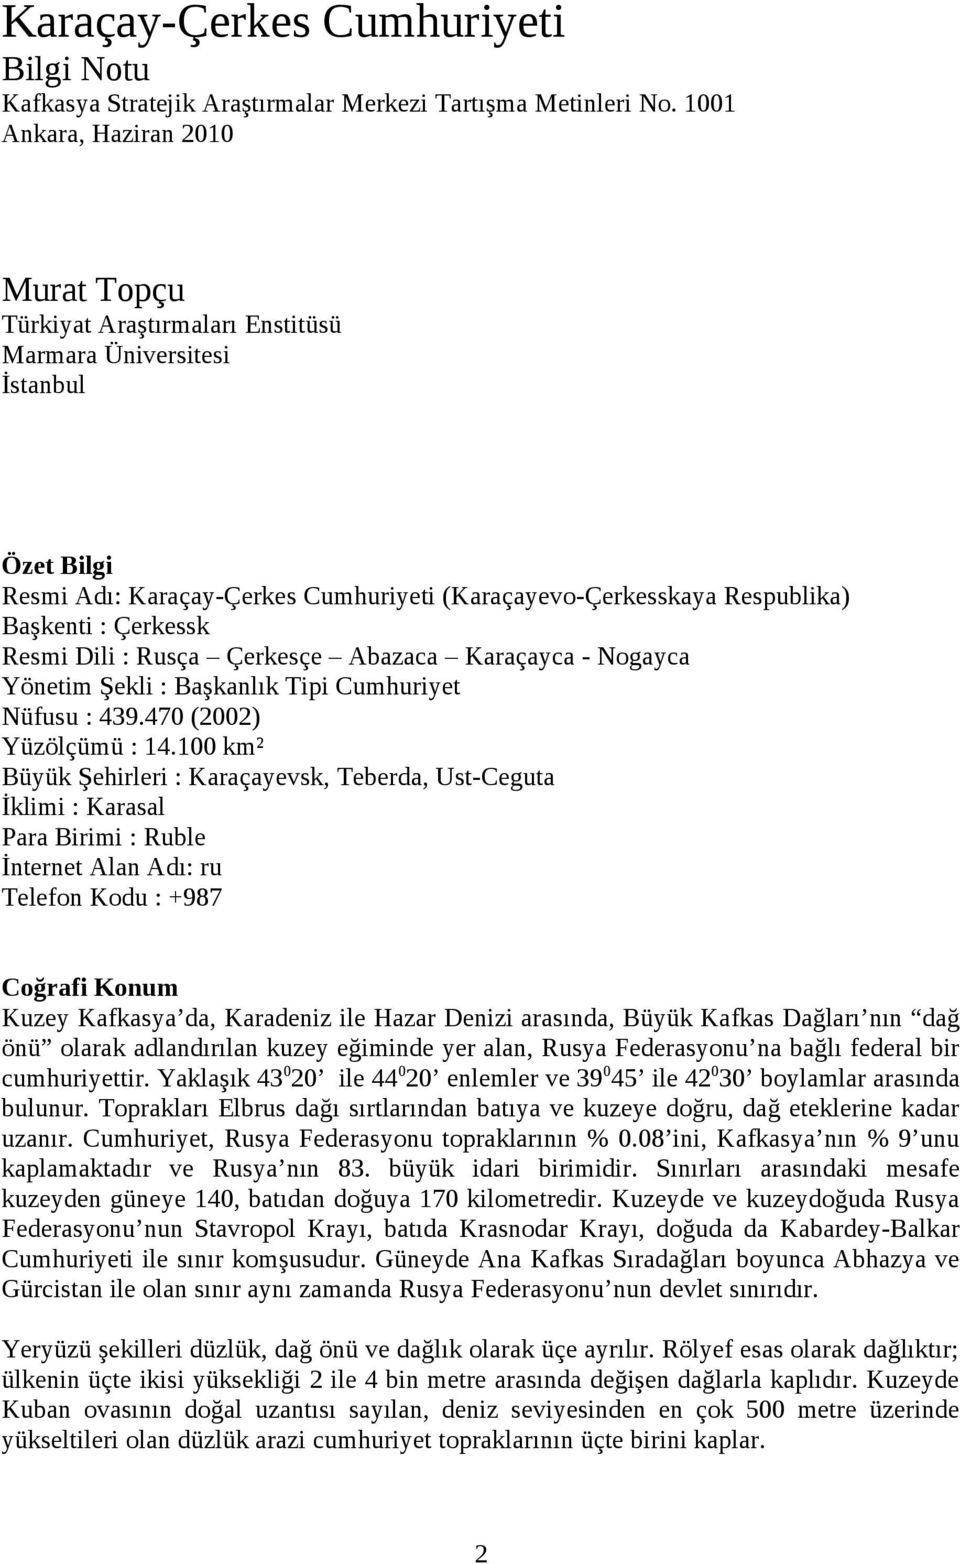 Çerkessk Resmi Dili : Rusça Çerkesçe Abazaca Karaçayca - Nogayca Yönetim Şekli : Başkanlık Tipi Cumhuriyet Nüfusu : 439.470 (2002) Yüzölçümü : 14.